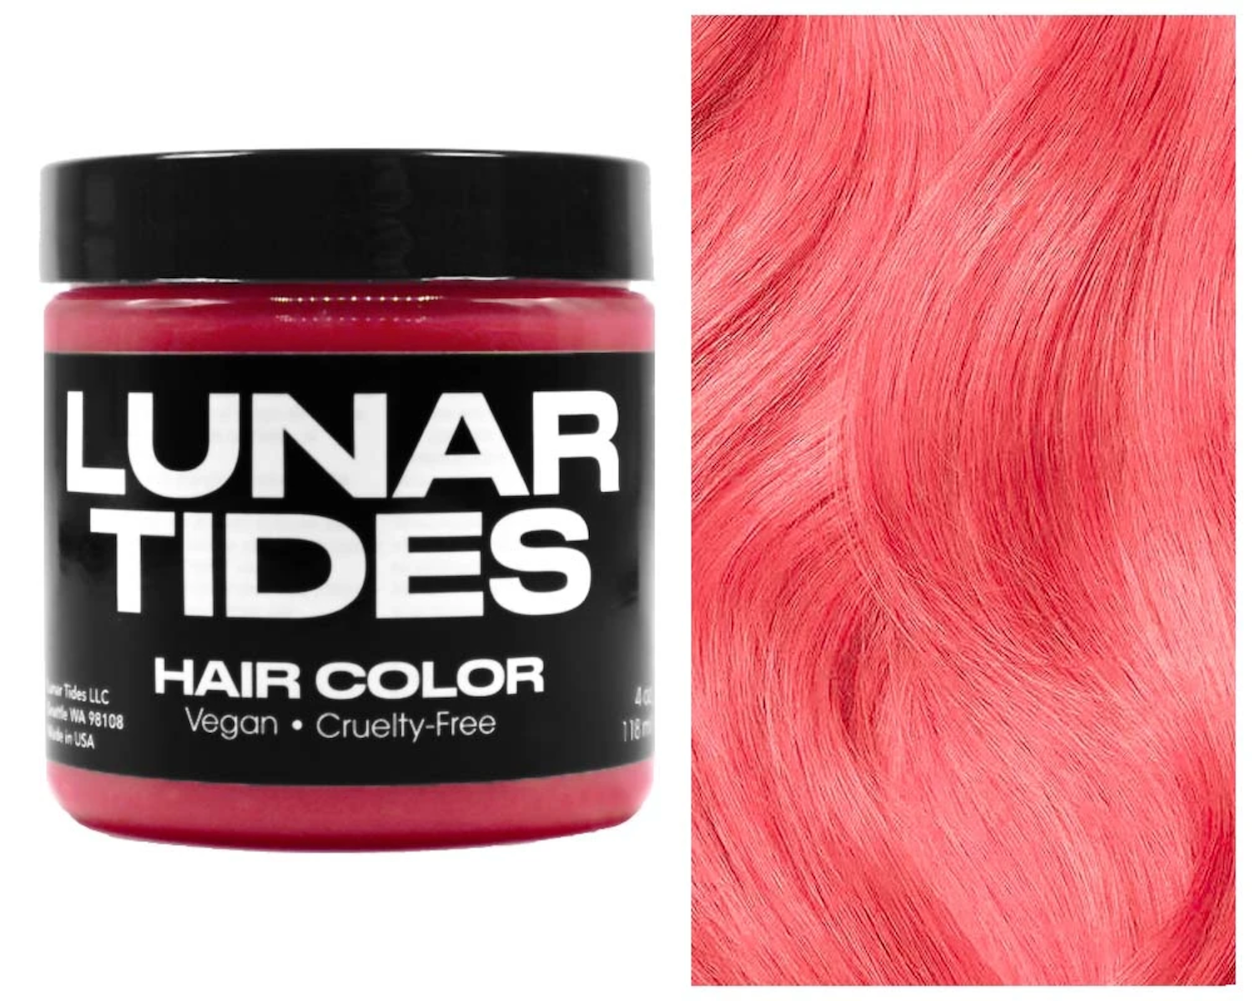 Lunar Tides Hair Dye - Coral Pink